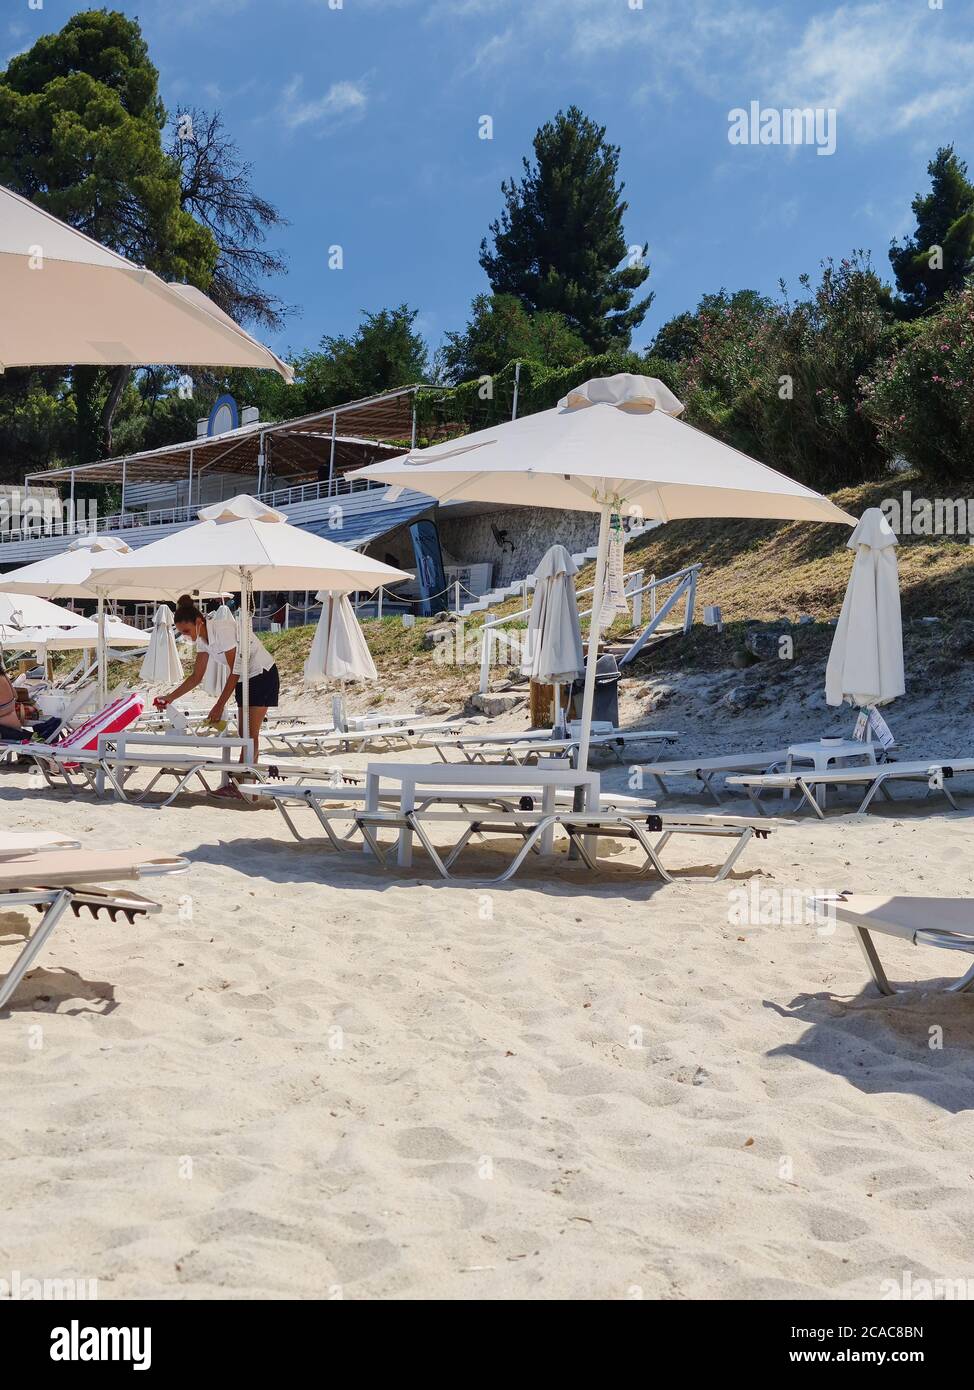 CHALKIDIKI, Grecia - Luglio 30 2020: Pulizia efficace Beach bar solarium mobili per ridurre il rischio di infezioni covid-19. Applicazione di una soluzione disinfettante sulla superficie delle sedie da spiaggia per eliminare germi e batteri. Foto Stock